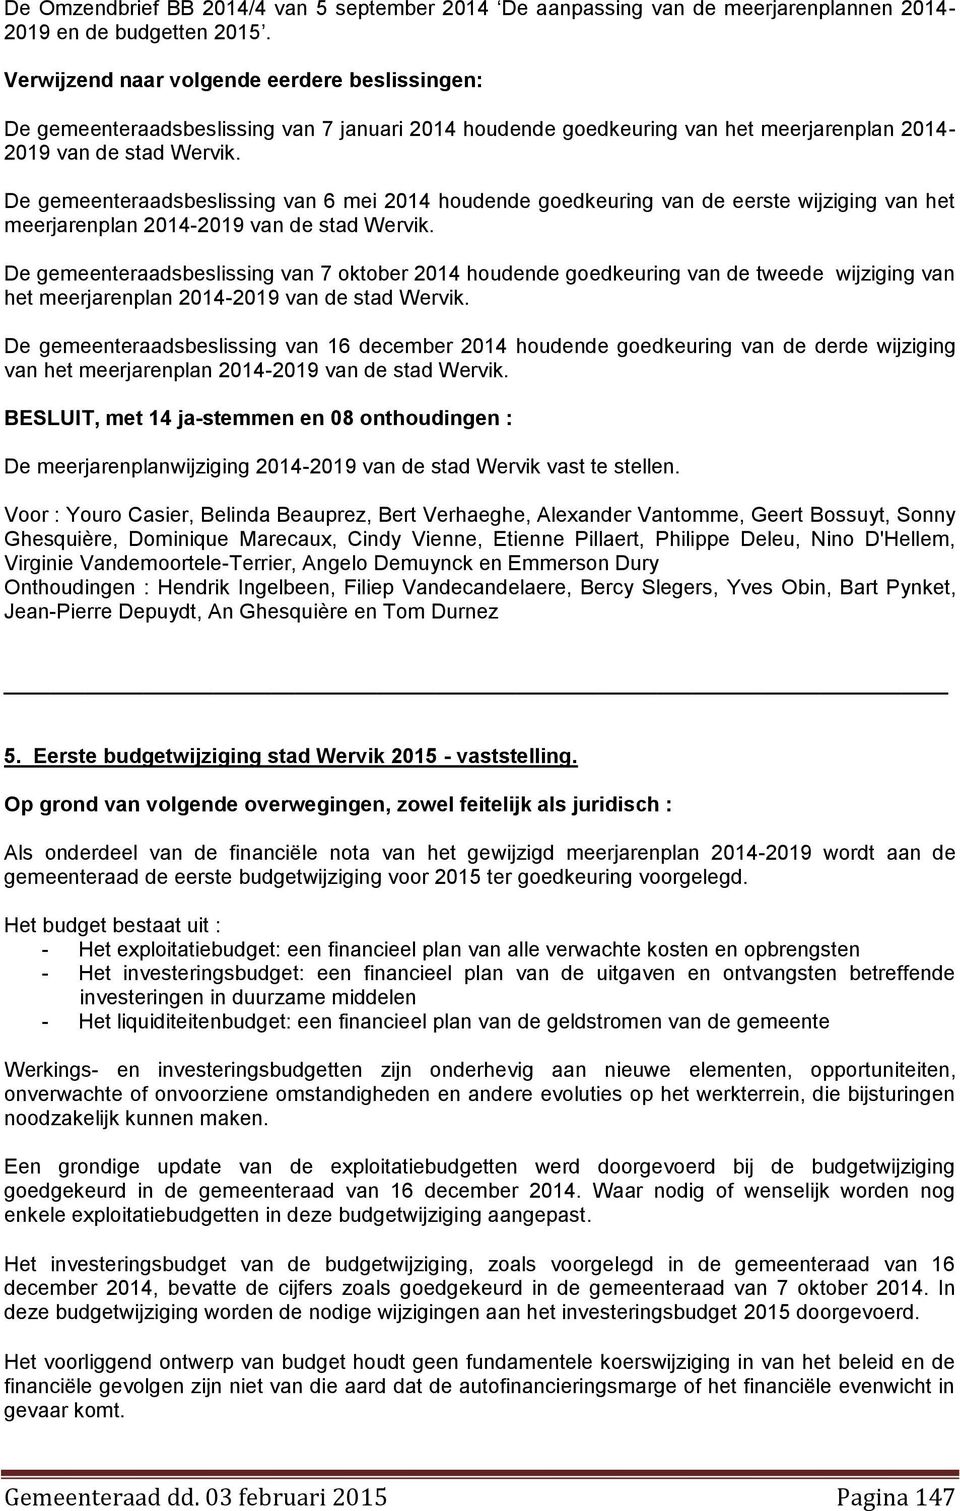 De gemeenteraadsbeslissing van 6 mei 2014 houdende goedkeuring van de eerste wijziging van het meerjarenplan 2014-2019 van de stad Wervik.